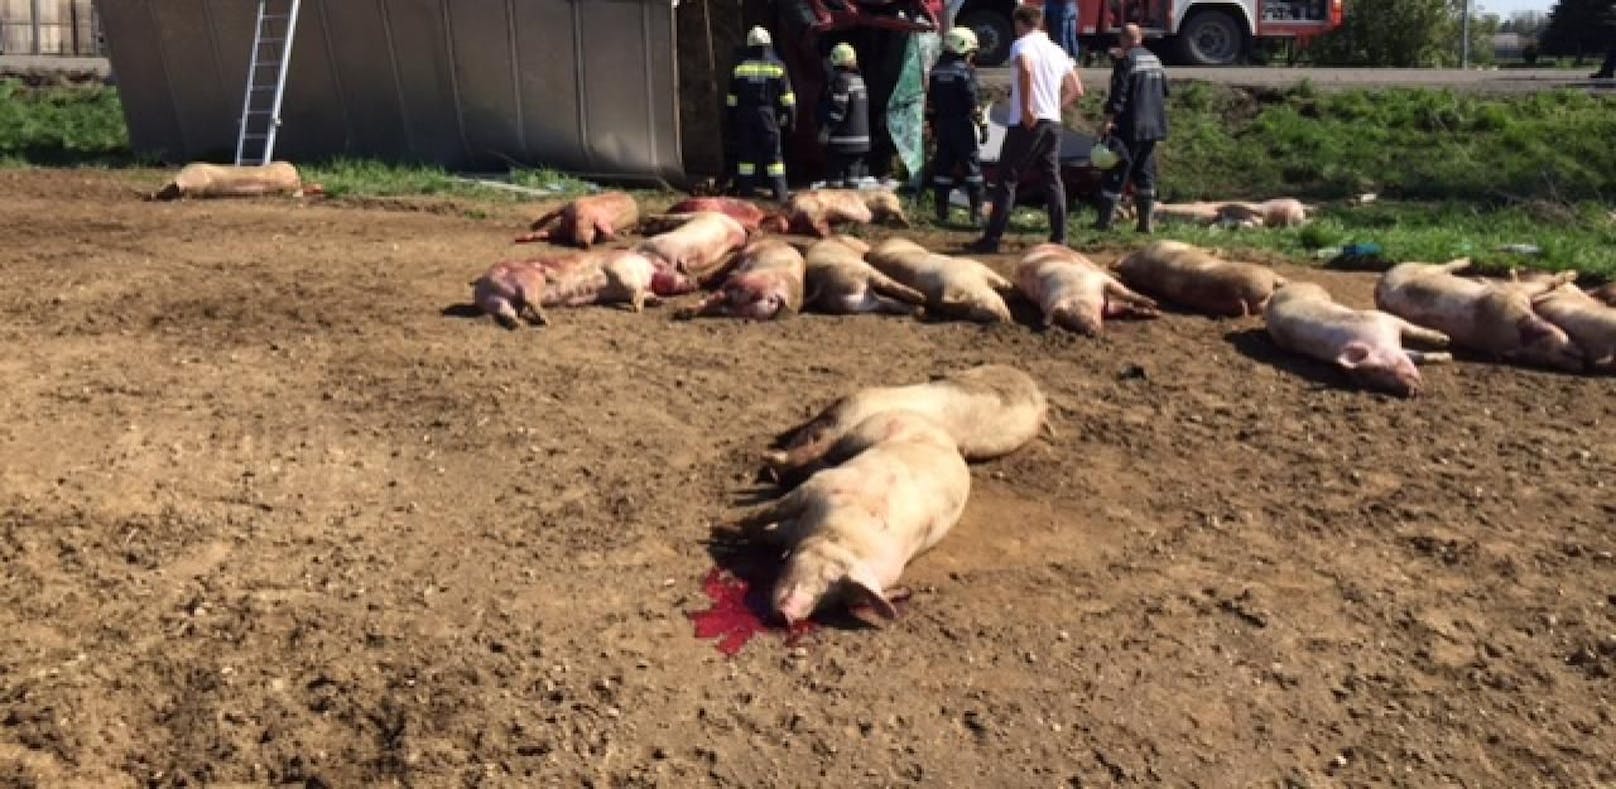 Über 20 Schweine bei Lkw-Unfall verendet